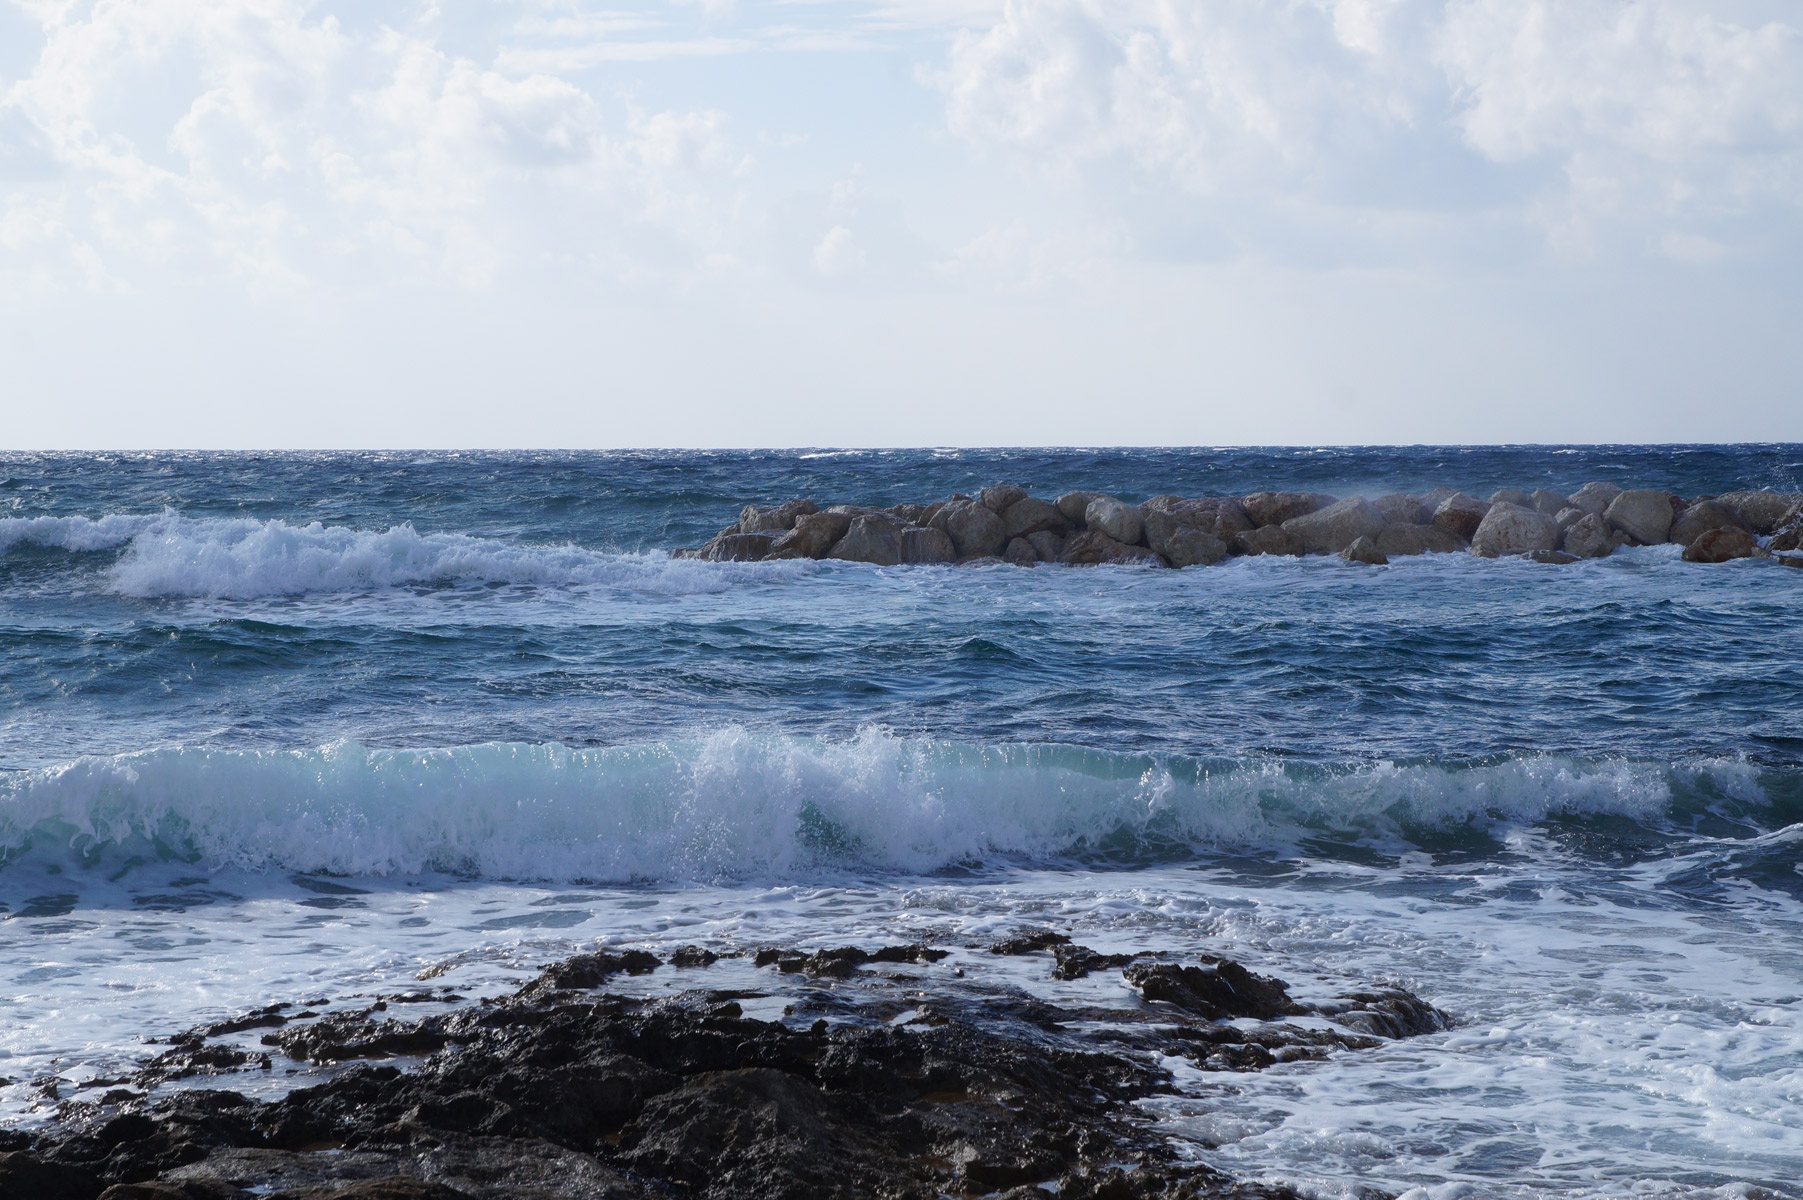 Волны можно фотографировать бесконечно...
Пафос, Кипр, осень 2018